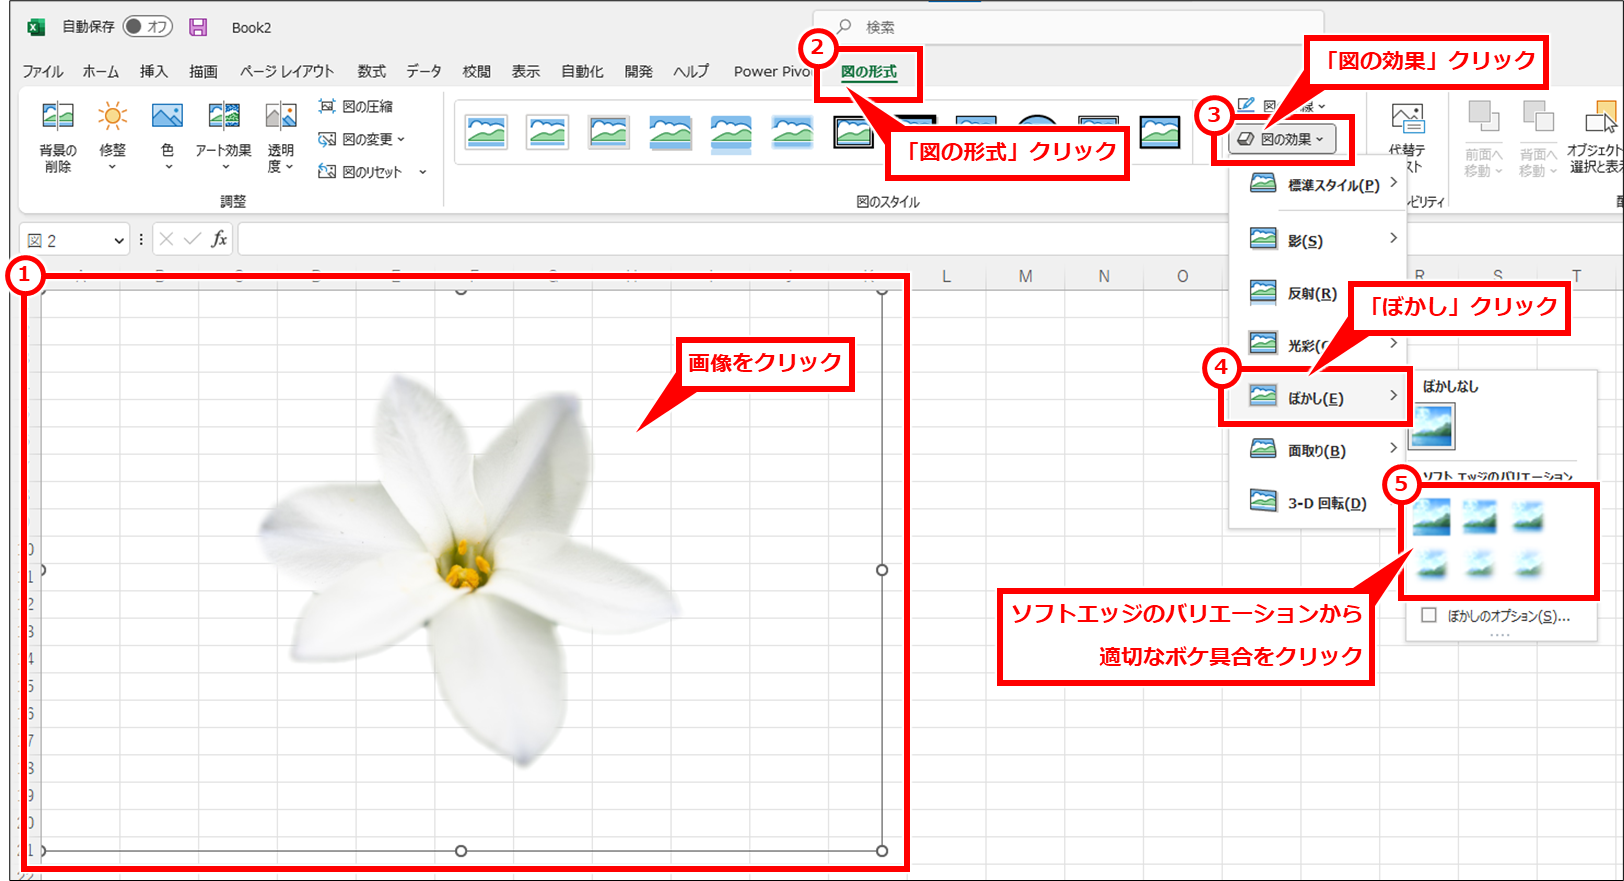 Excel 写真・画像の切り抜き・色合いを調整して画像ファイルとして保存する方法 画像をクリックし、「図の形式」 → 「図の効果」 → 「ぼかし」を順にクリックし、「ソフトエッジのバリエーション」セクションの中から適切なボケ具合をクリック。細かく設定したい場合は、「ぼかしのオプション」クリックして細かく調整できる。